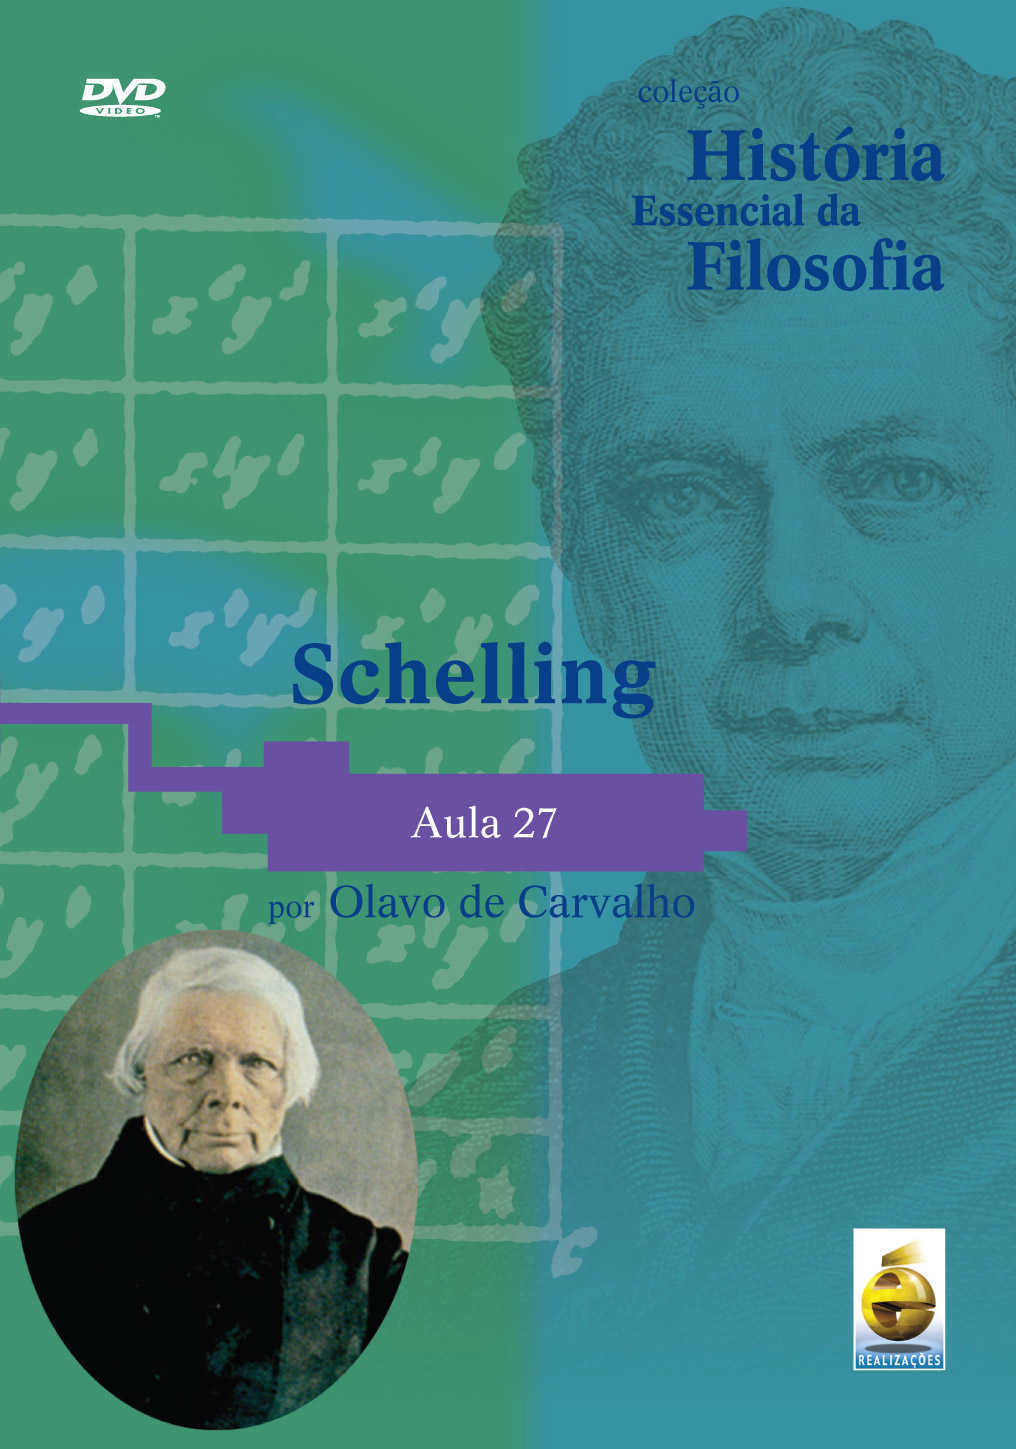 Dvd – Coleção História Essencial Da Filosofia – Schelling | Aula 27